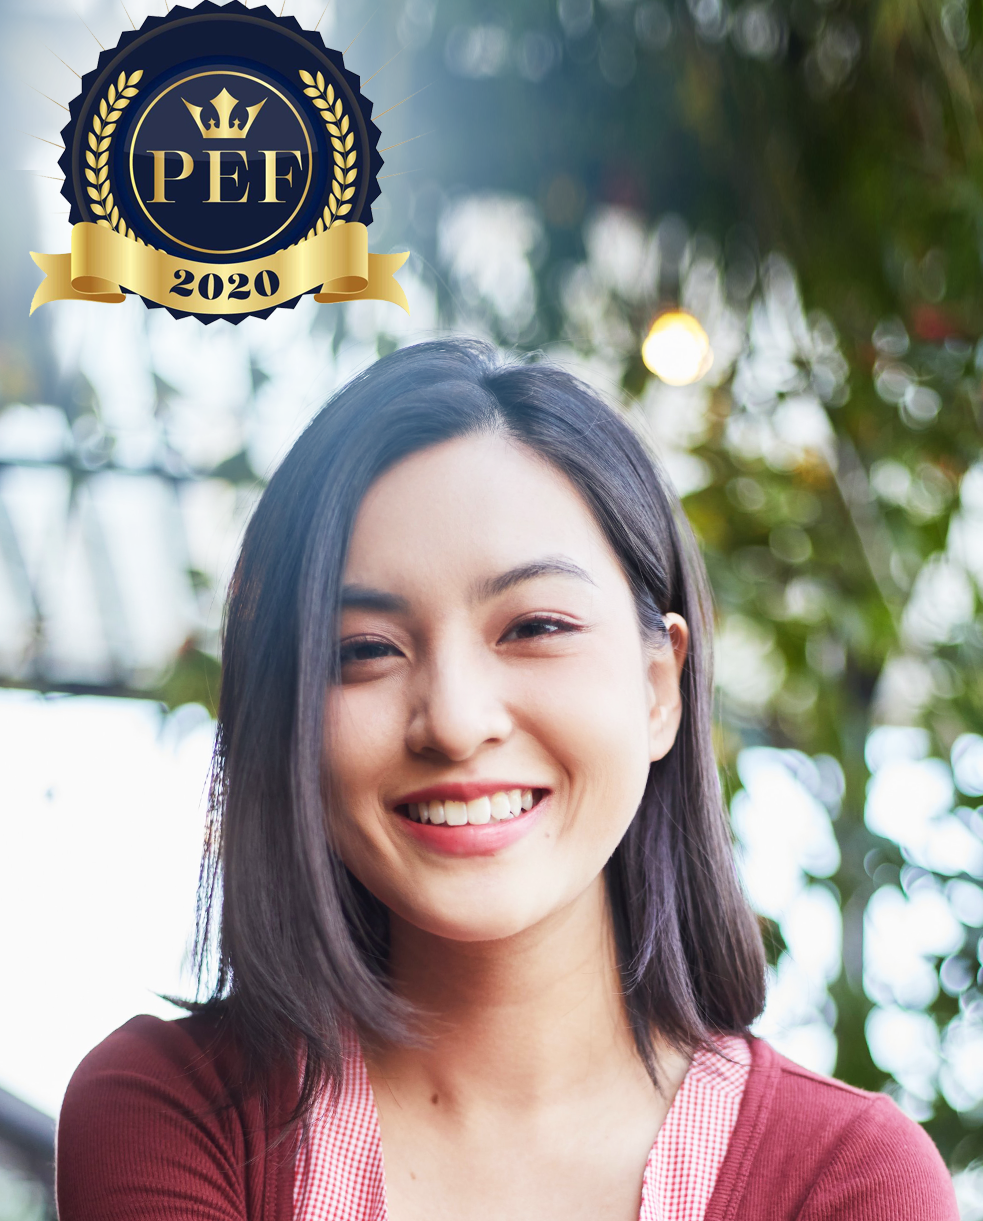 PEF 2020 - Triển lãm du học Philippines: Lắng nghe bí quyết đạt IELTS 8.5 của 